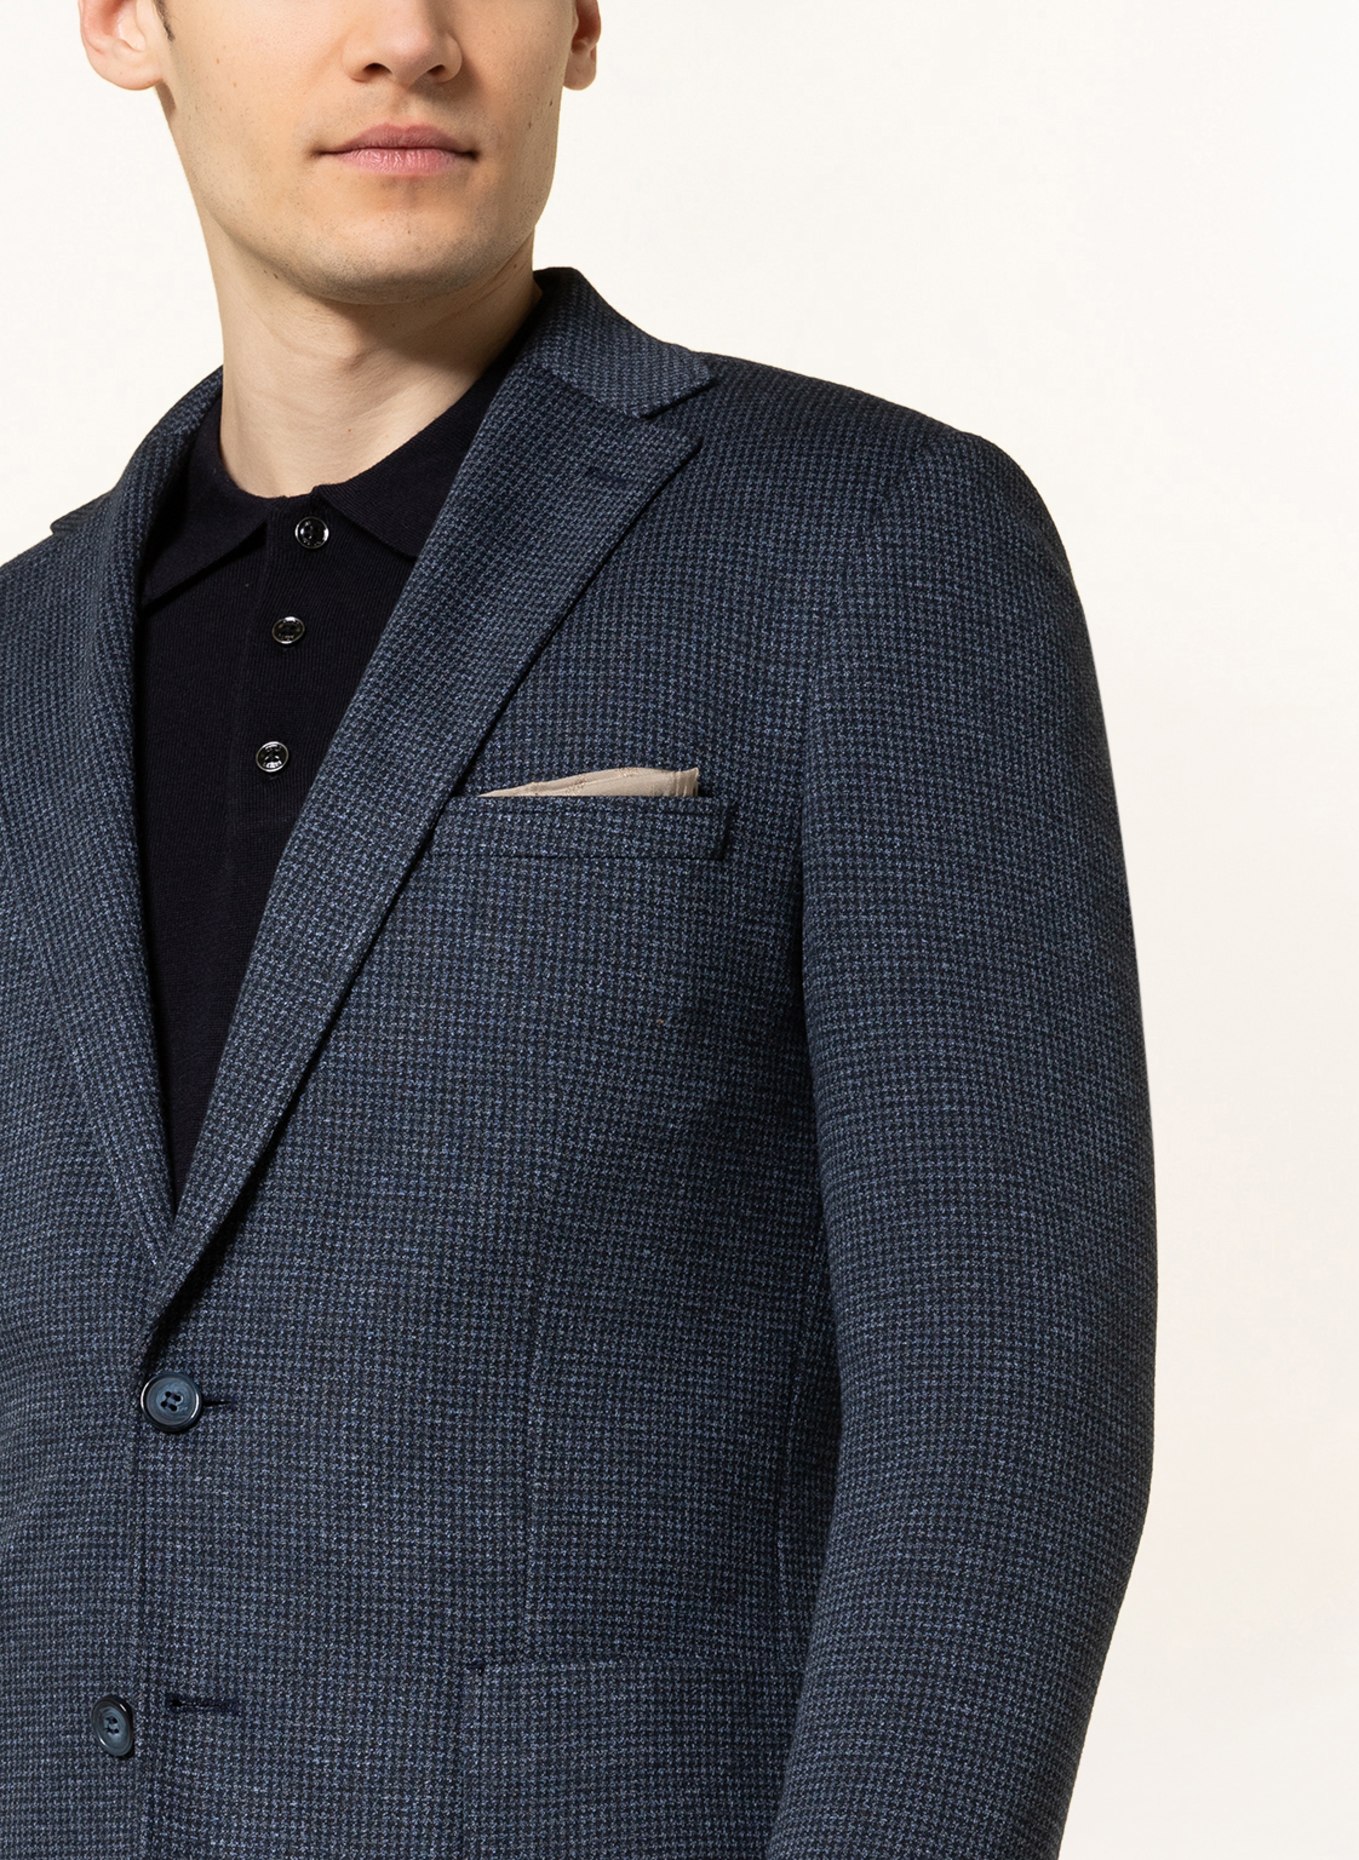 PAUL Suit jacket slim fit, Color: 660 navy (Image 6)